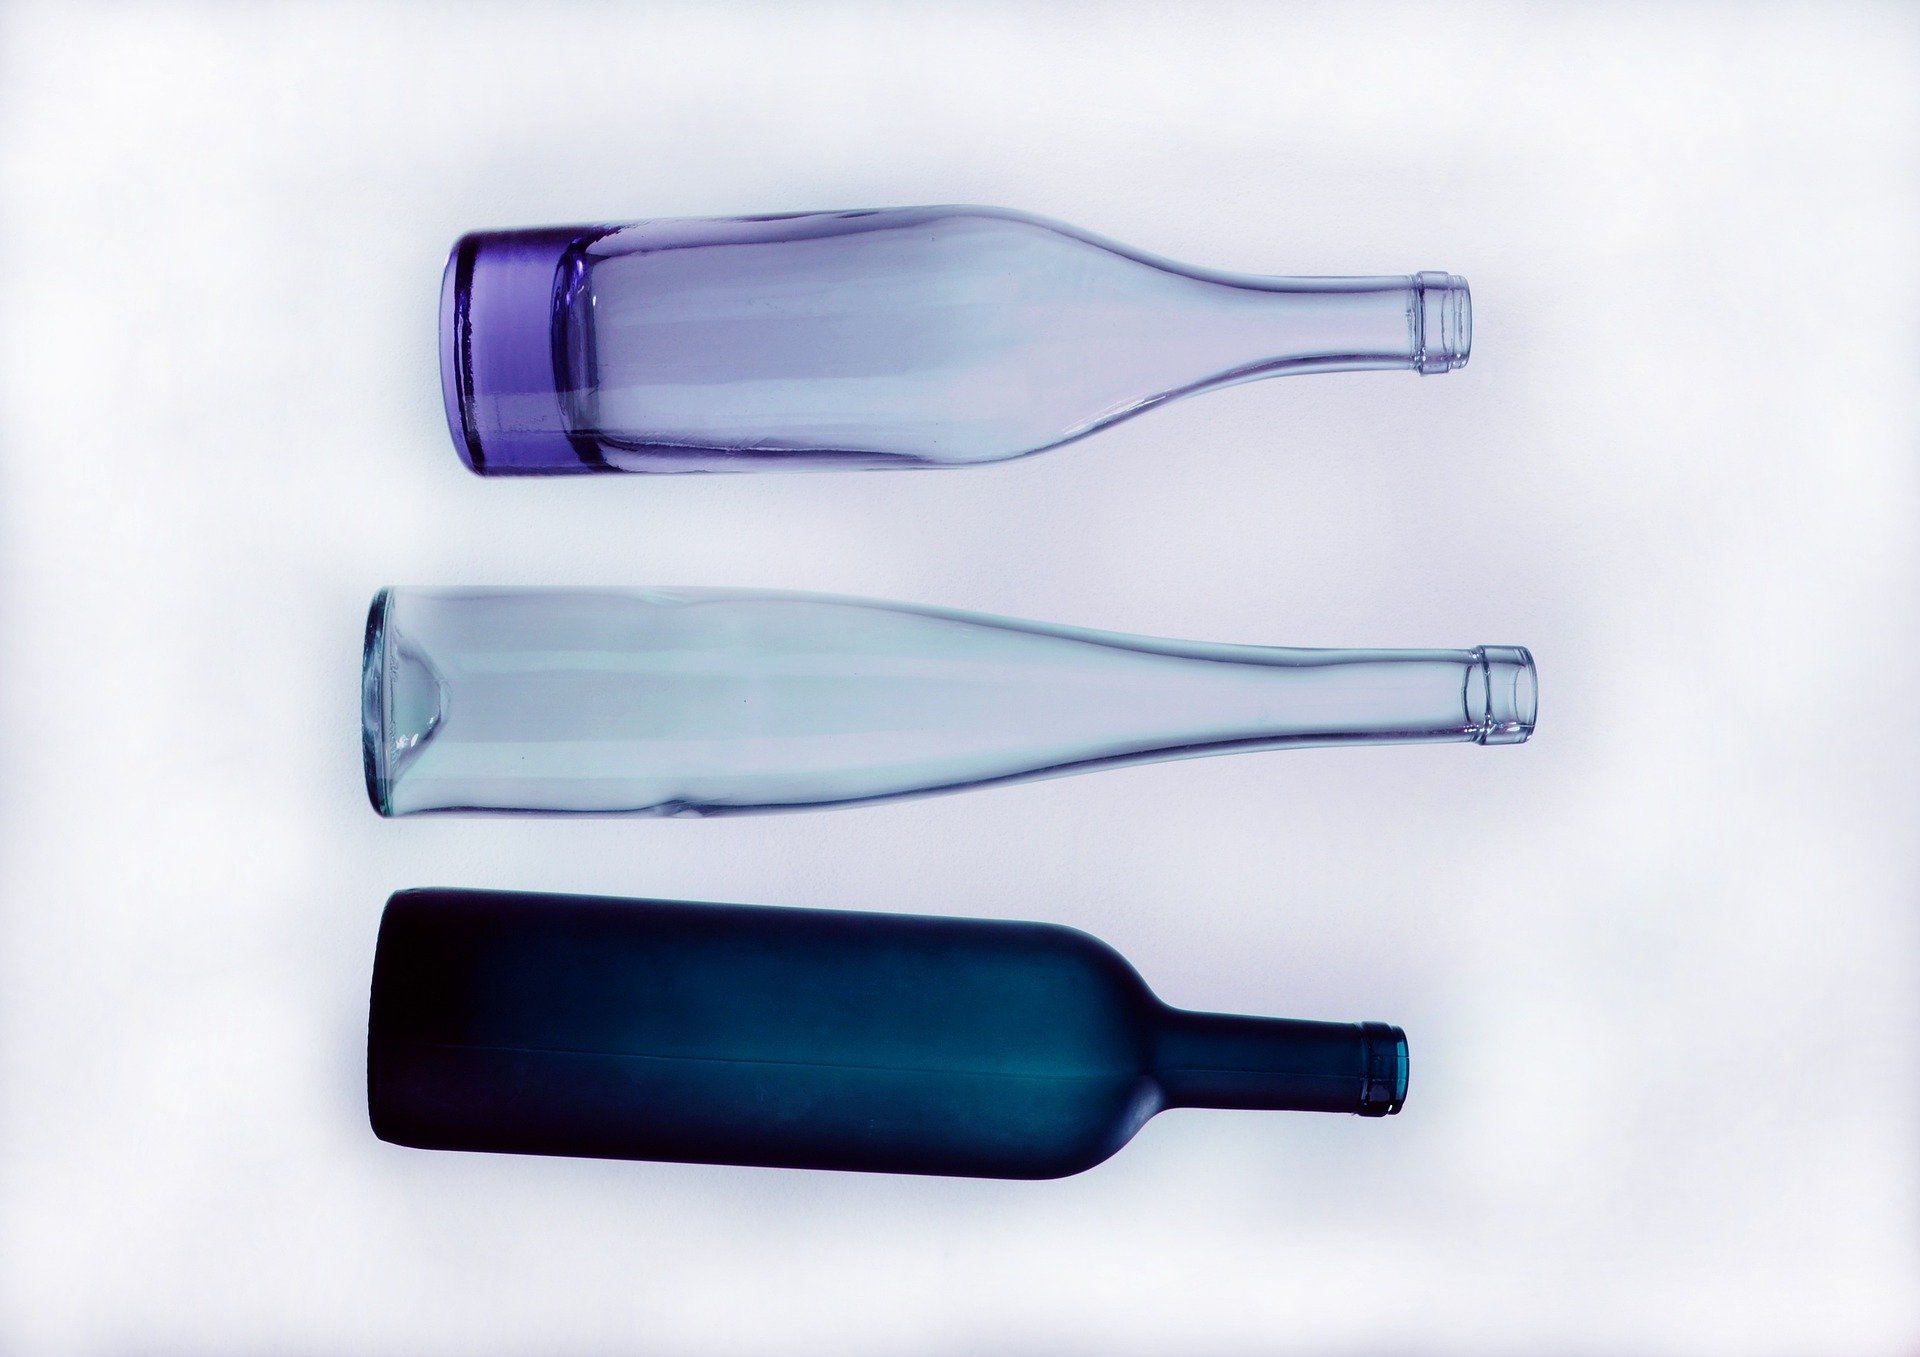 https://okdiario.com/img/2018/05/22/botellas-vidrio.jpg